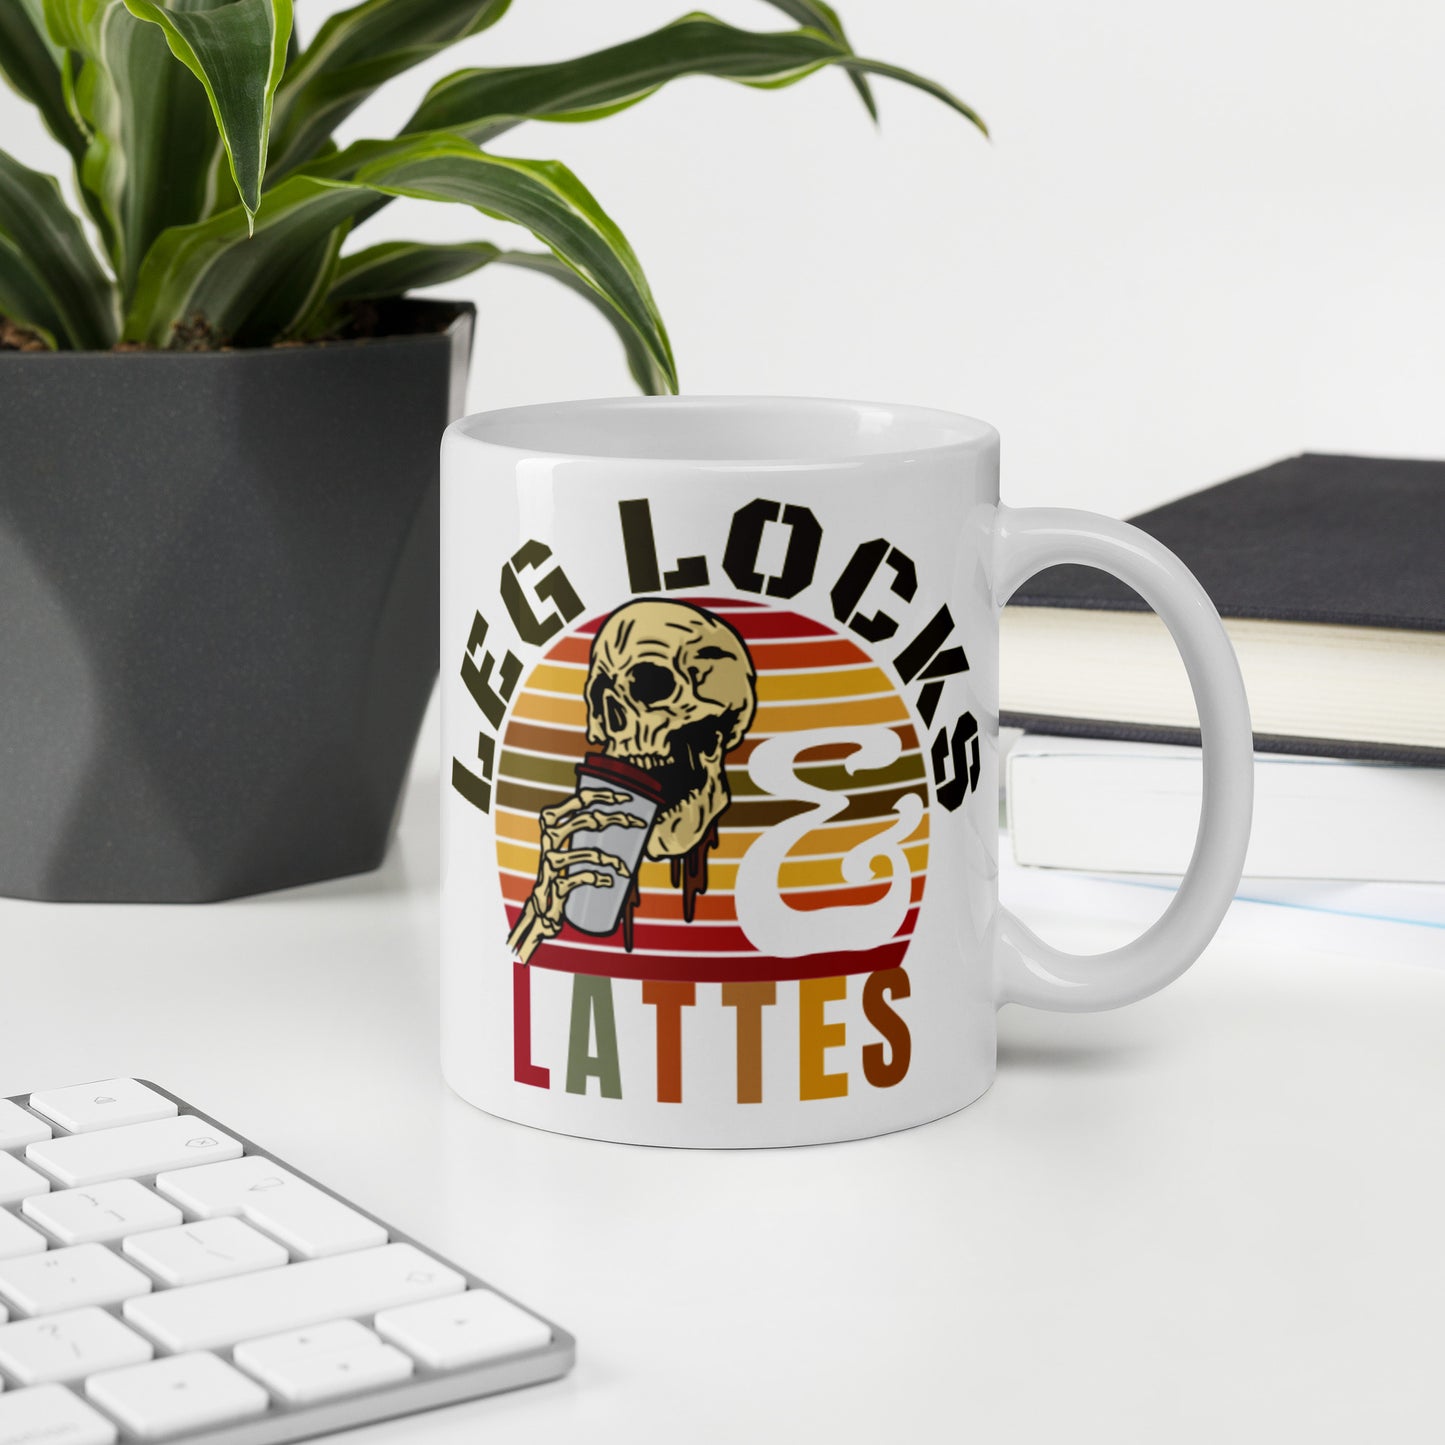 Leg Locks & Lattes Mug